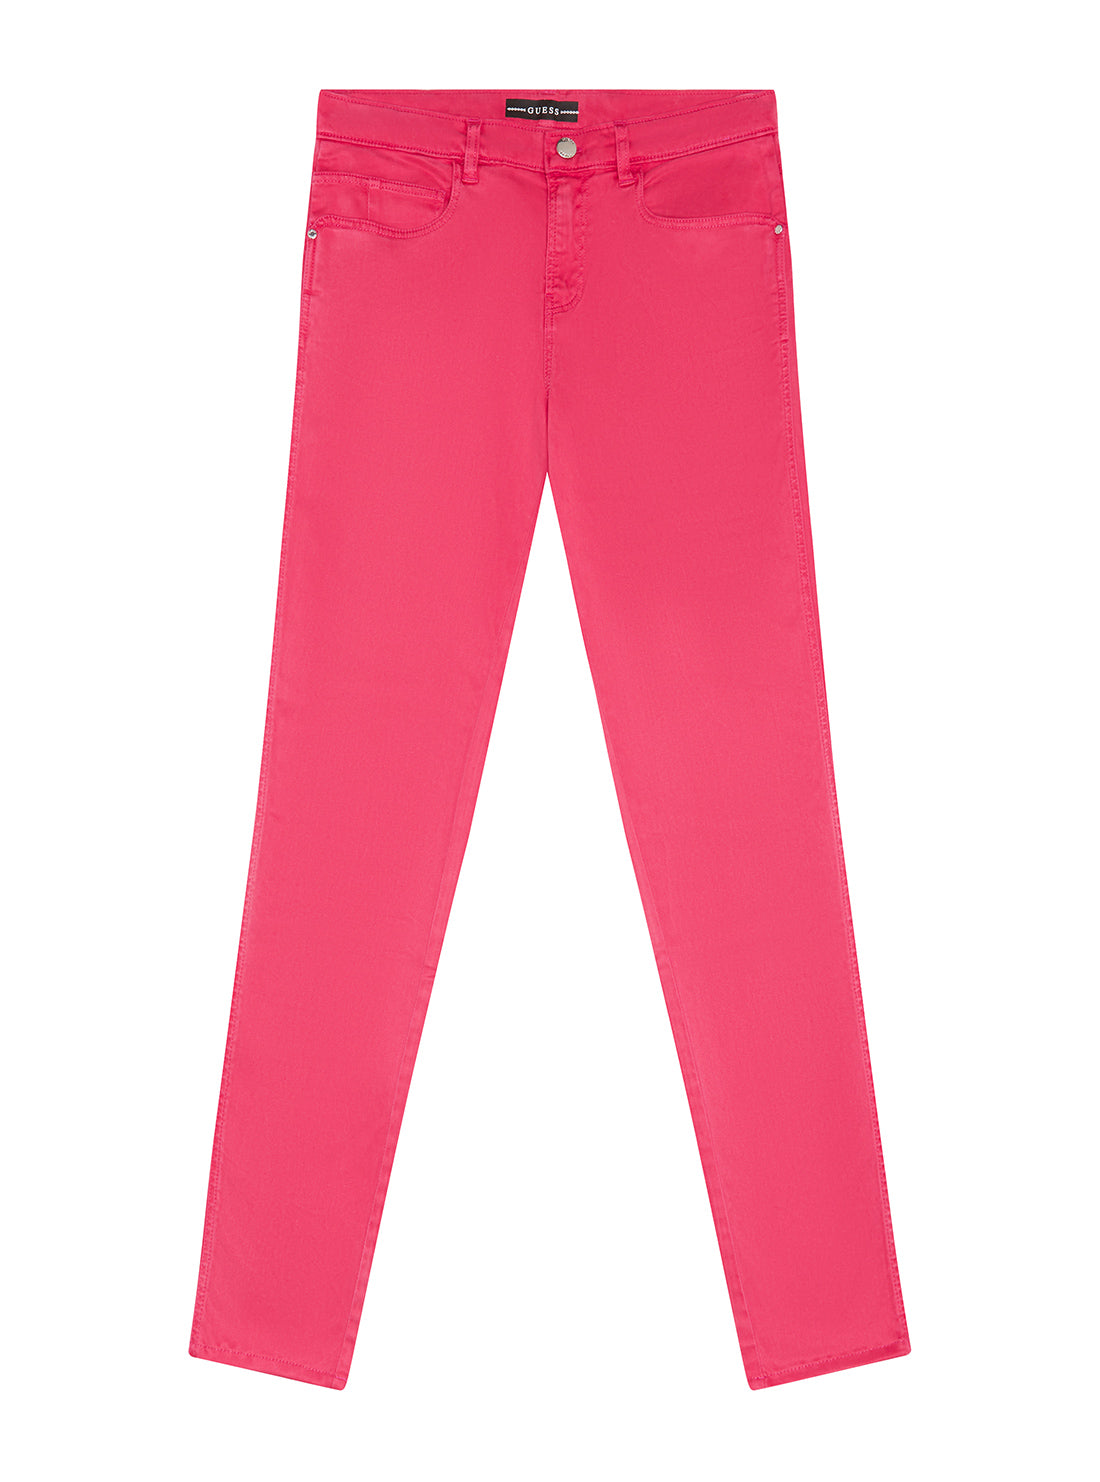 GUESS Big Girls Souvenir Pink Stretch Pants (7-16) J1YB05WB7X0 Front View